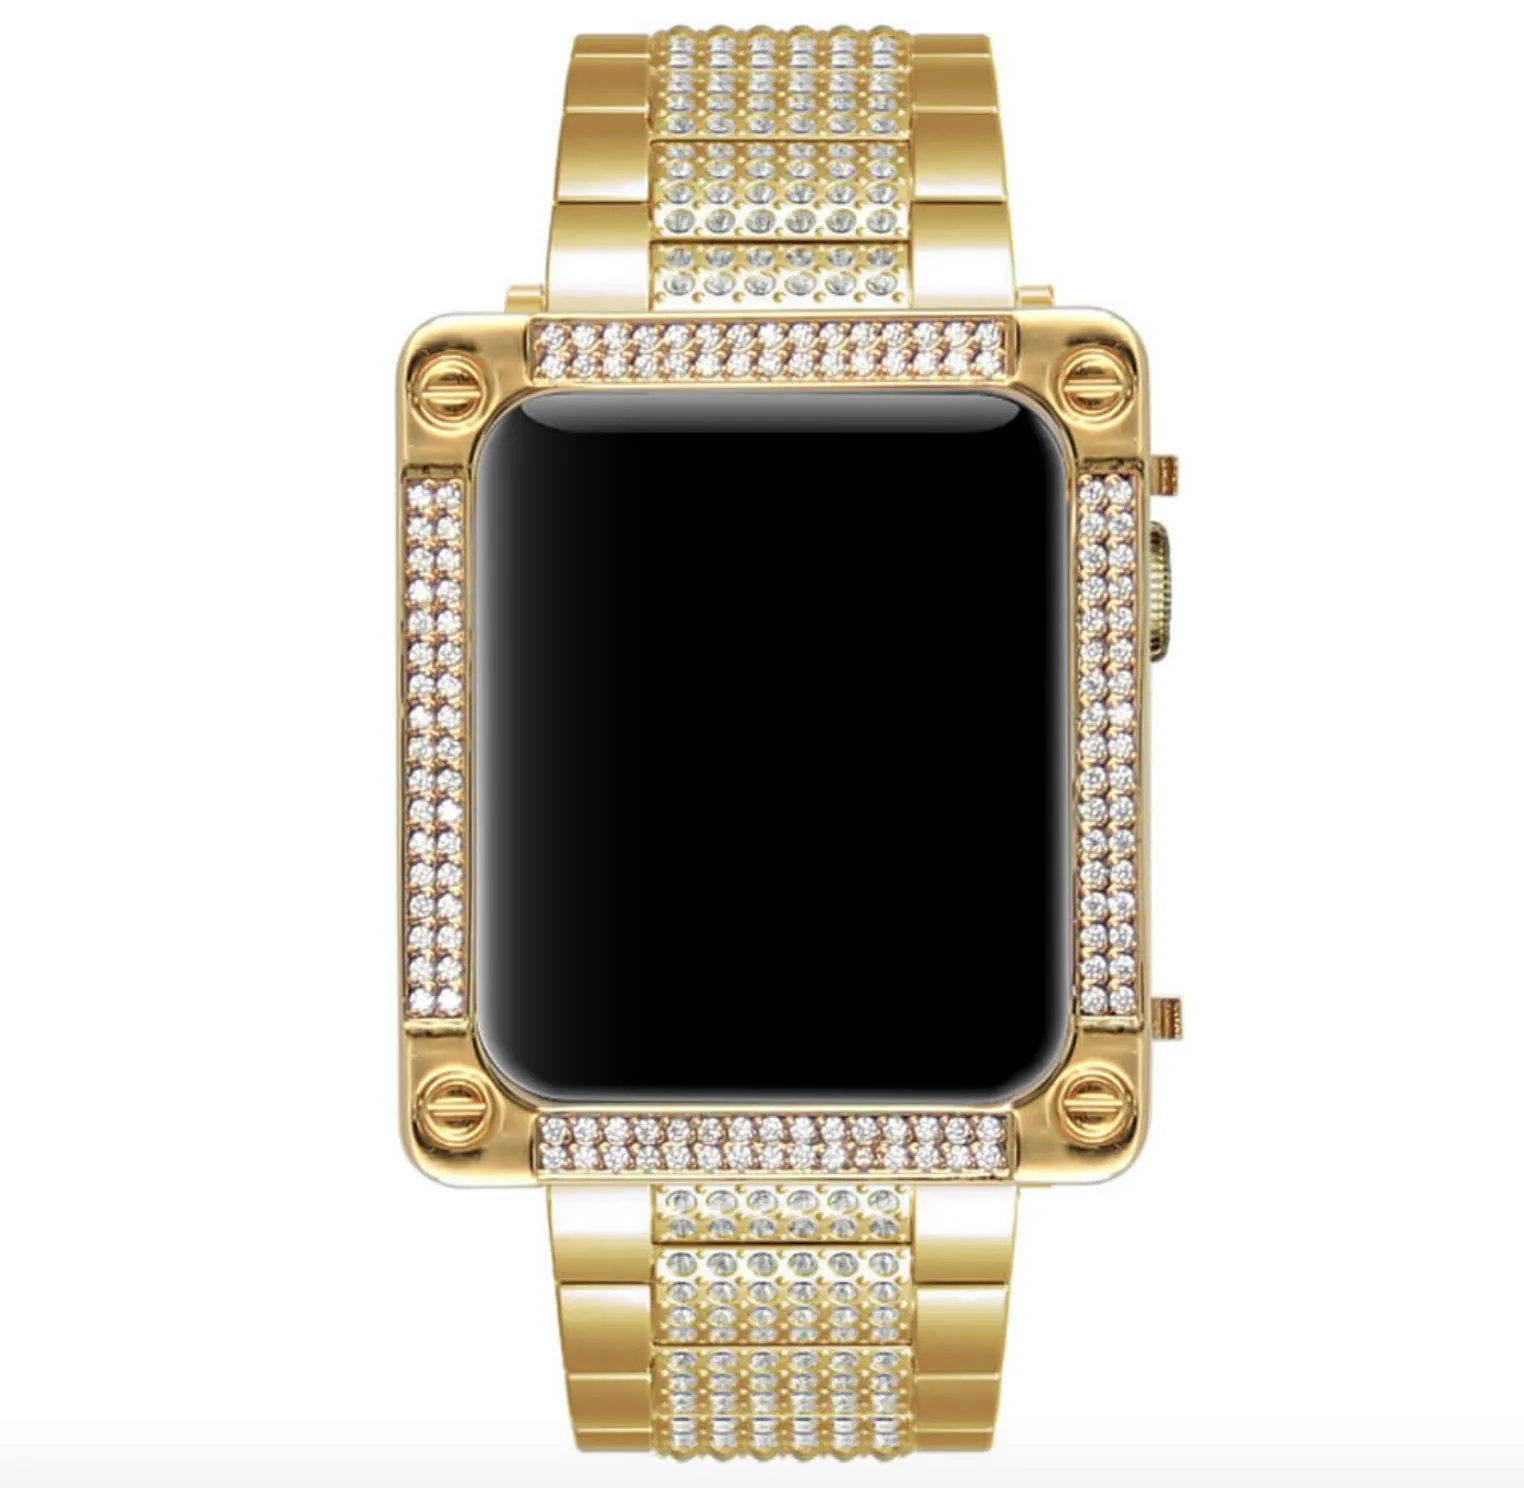 38mm 42mm Bling Bling Full Diamonds Golden Watch Strap+ Golden Diamonds Bezel Case for Apple Watch S1/S2/S3 (2in1 Set)